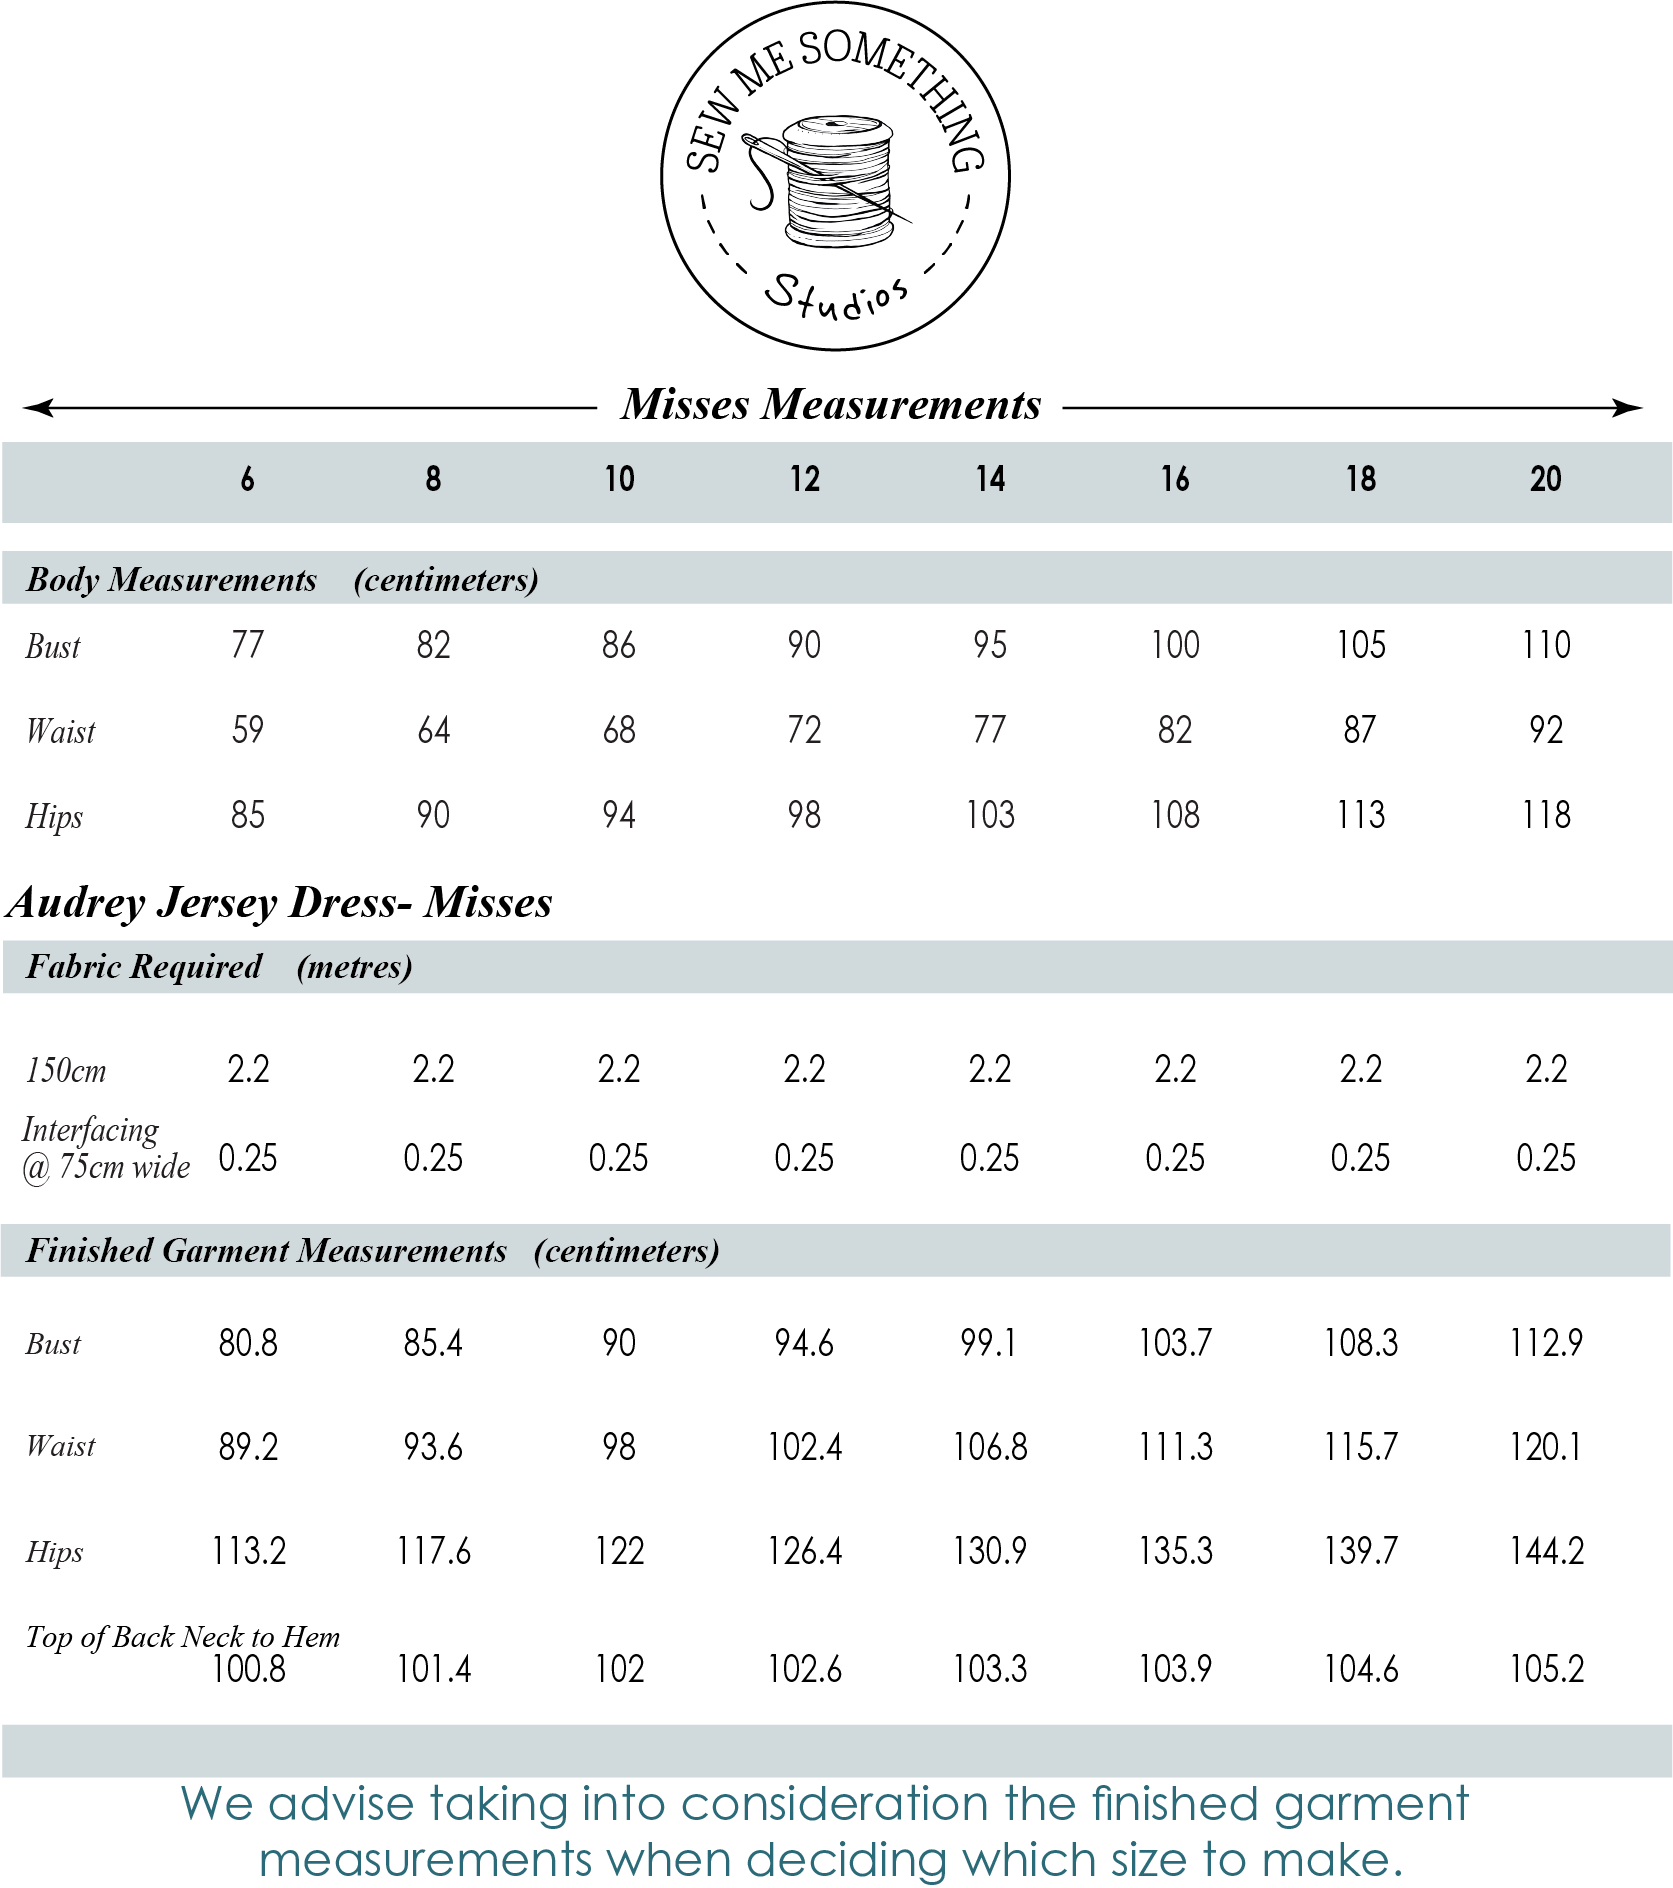 Audrey Jersey Dress - Misses - Measurement Chart